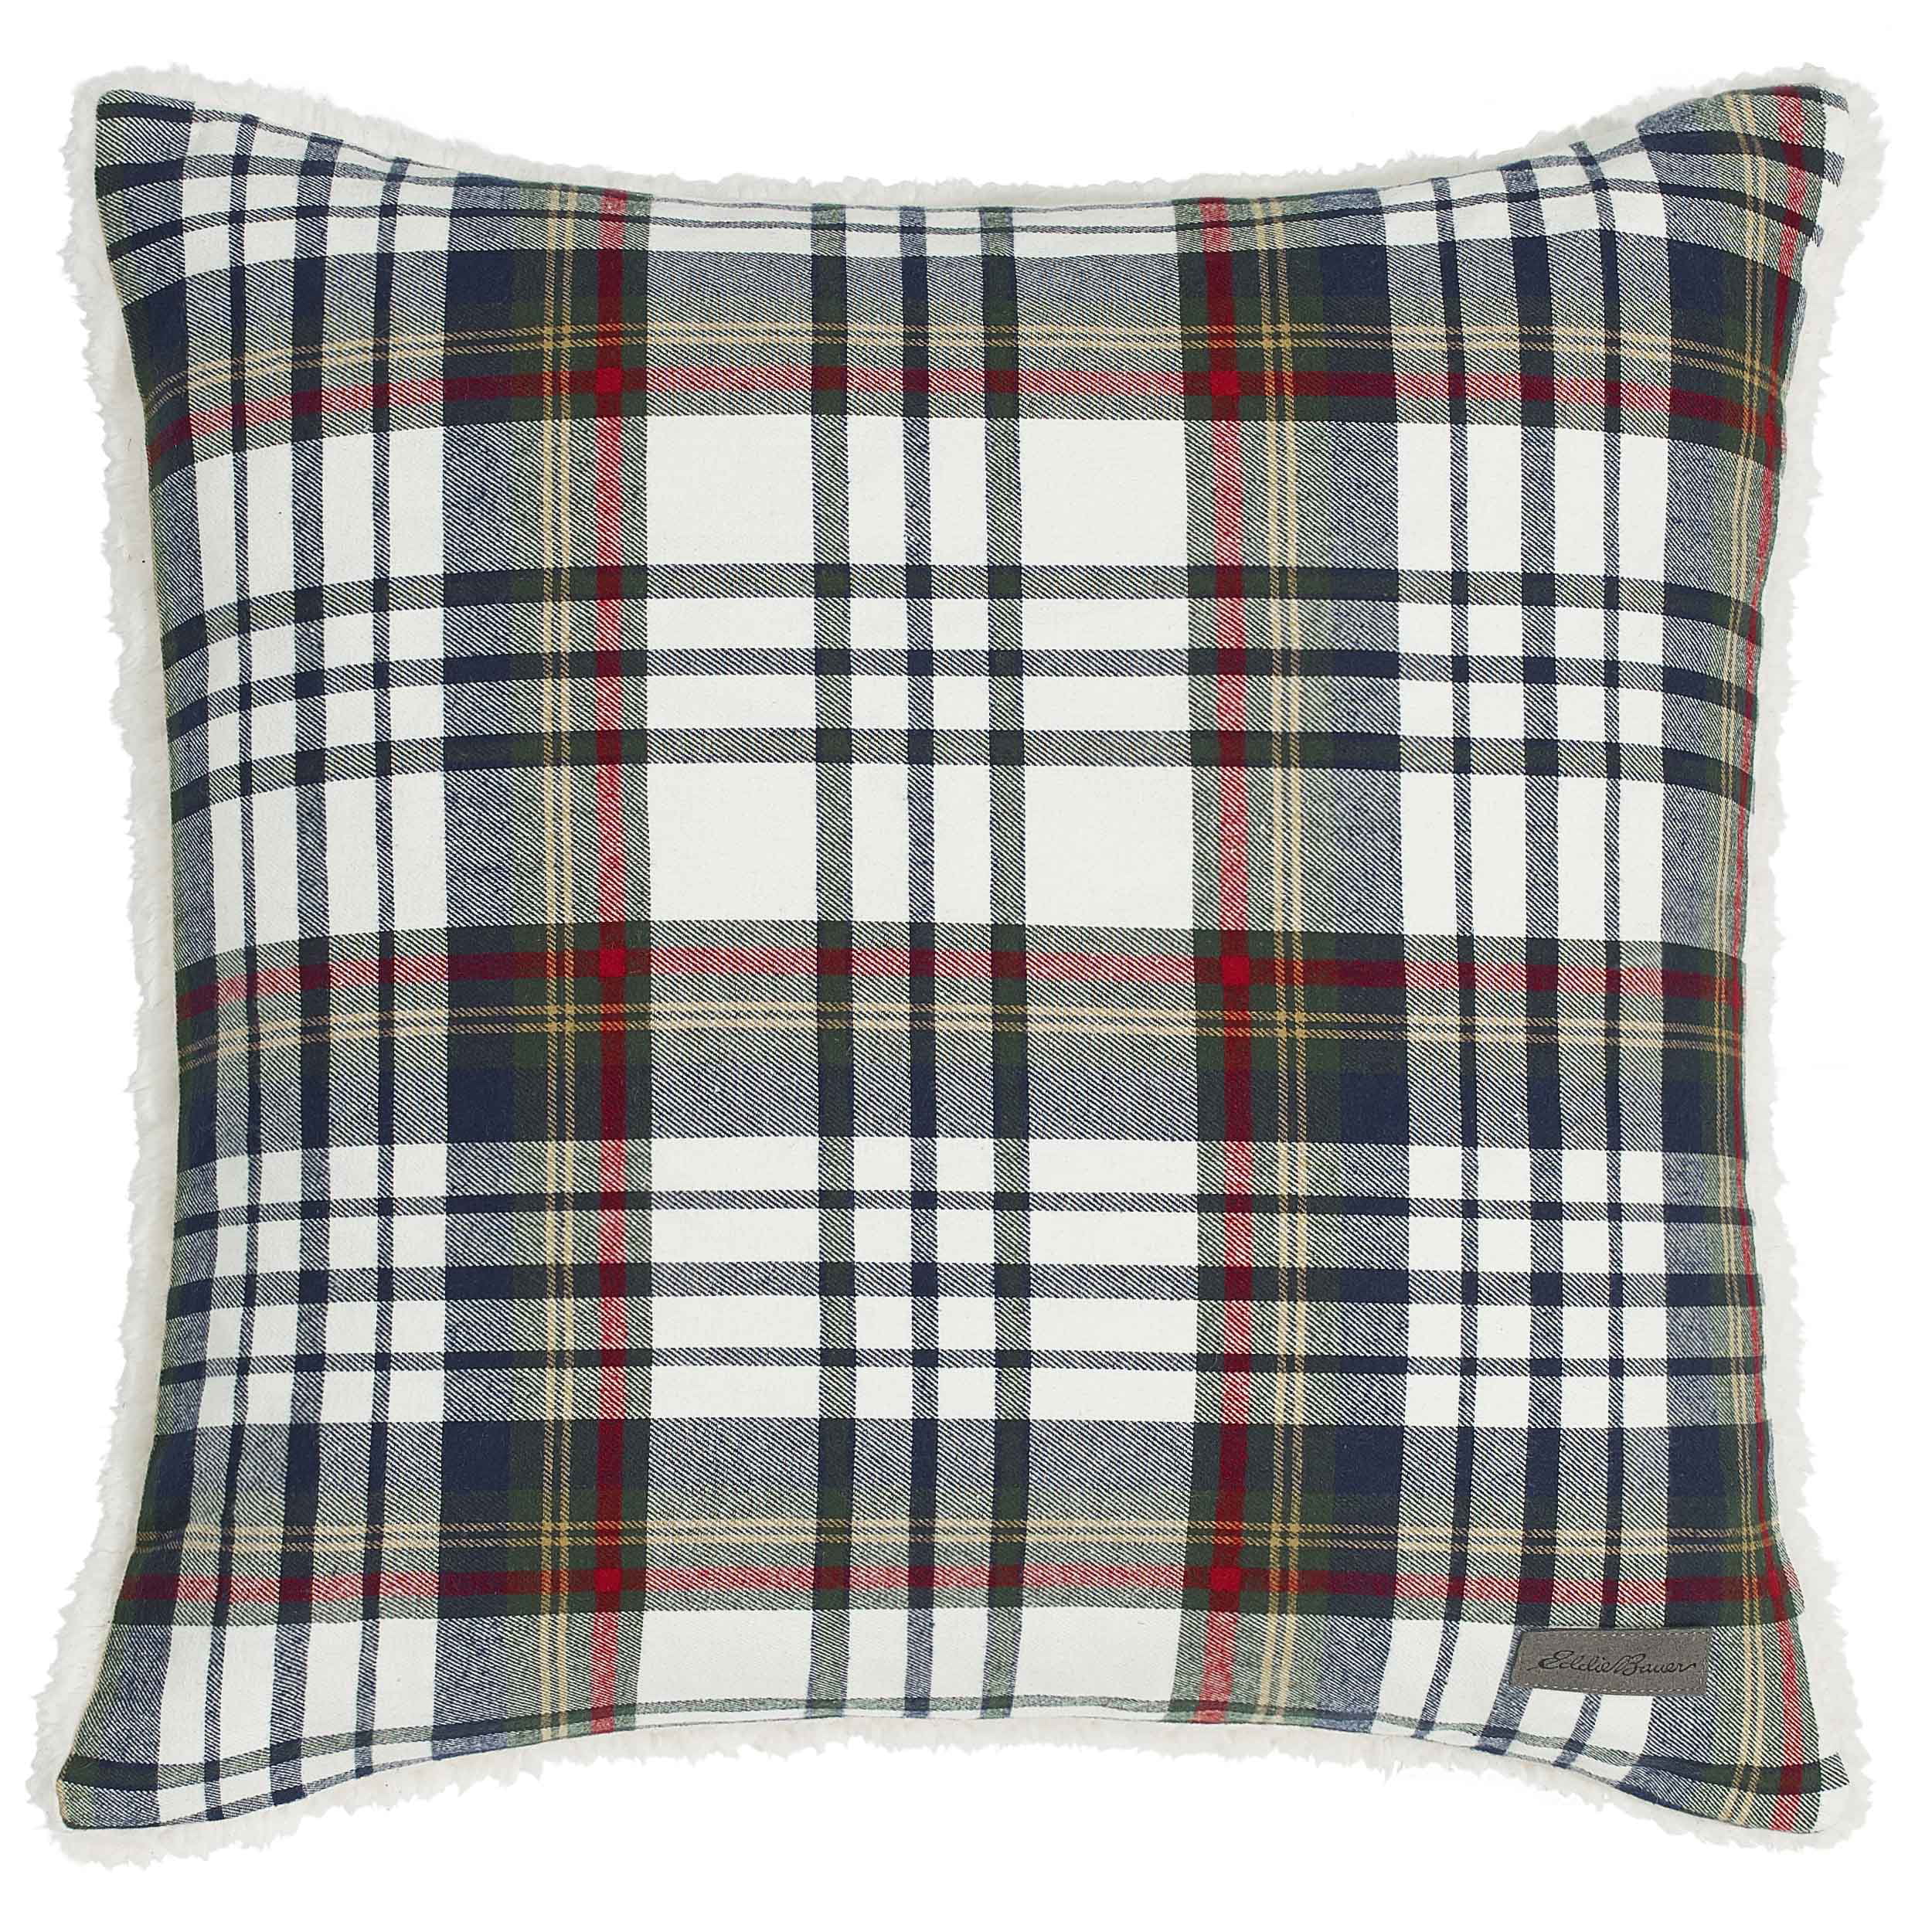 Eddie Bauer Home Lodge Grey Plaid Throw Pillow 20 x 20 